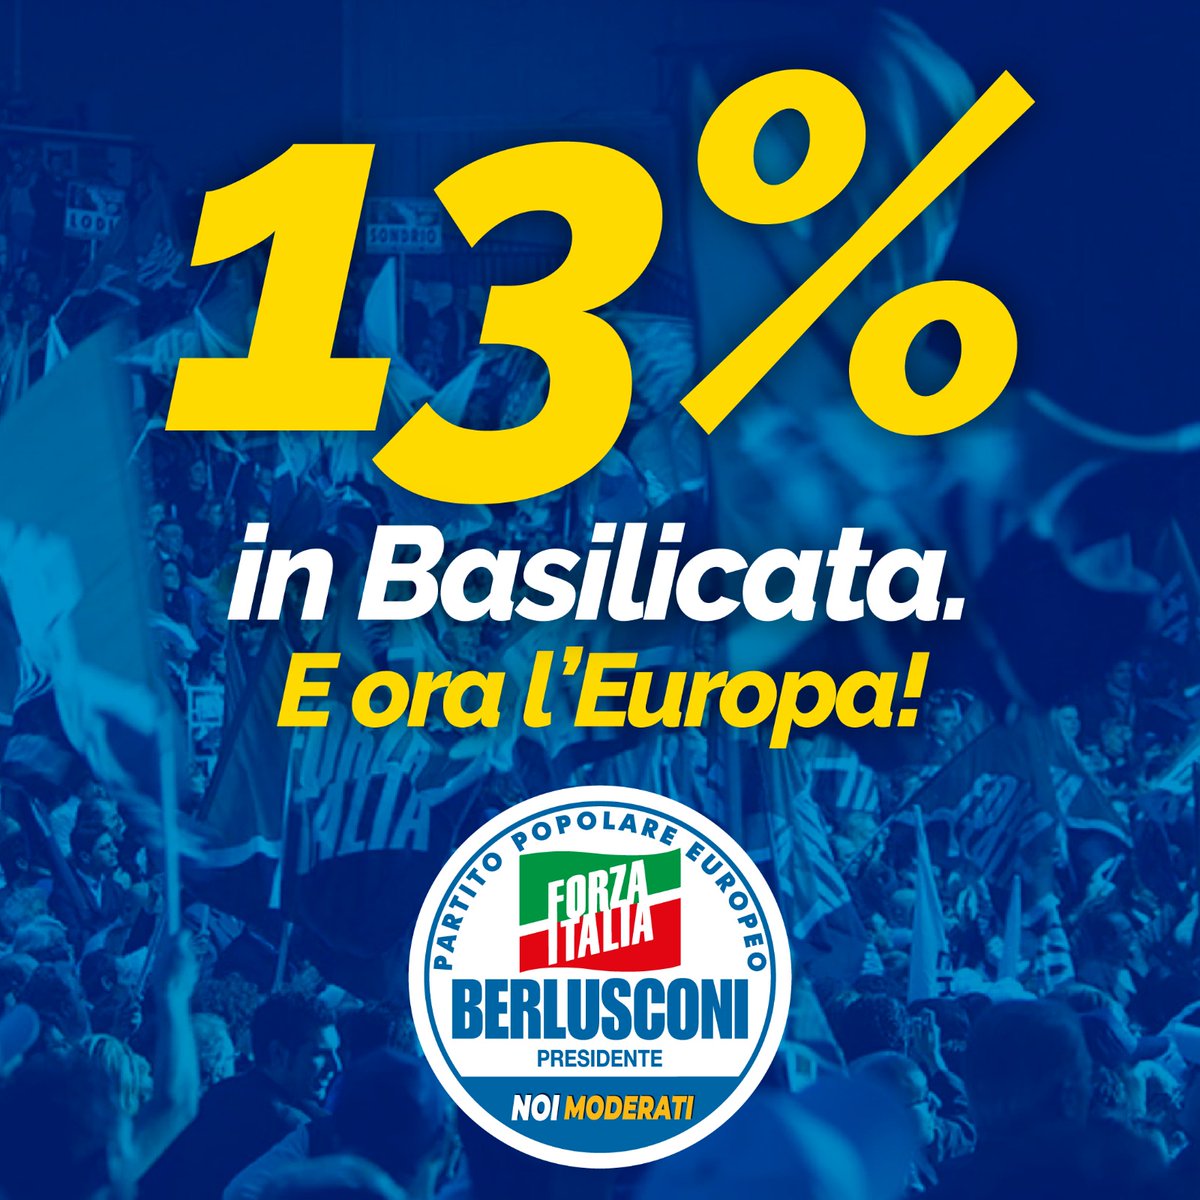 Il centrodestra vince anche in #Basilicata e Forza Italia con uno straordinario 13% continua a crescere nei consensi. Gli italiani premiano il nostro lavoro e ci considerano sempre di più la loro forza rassicurante.